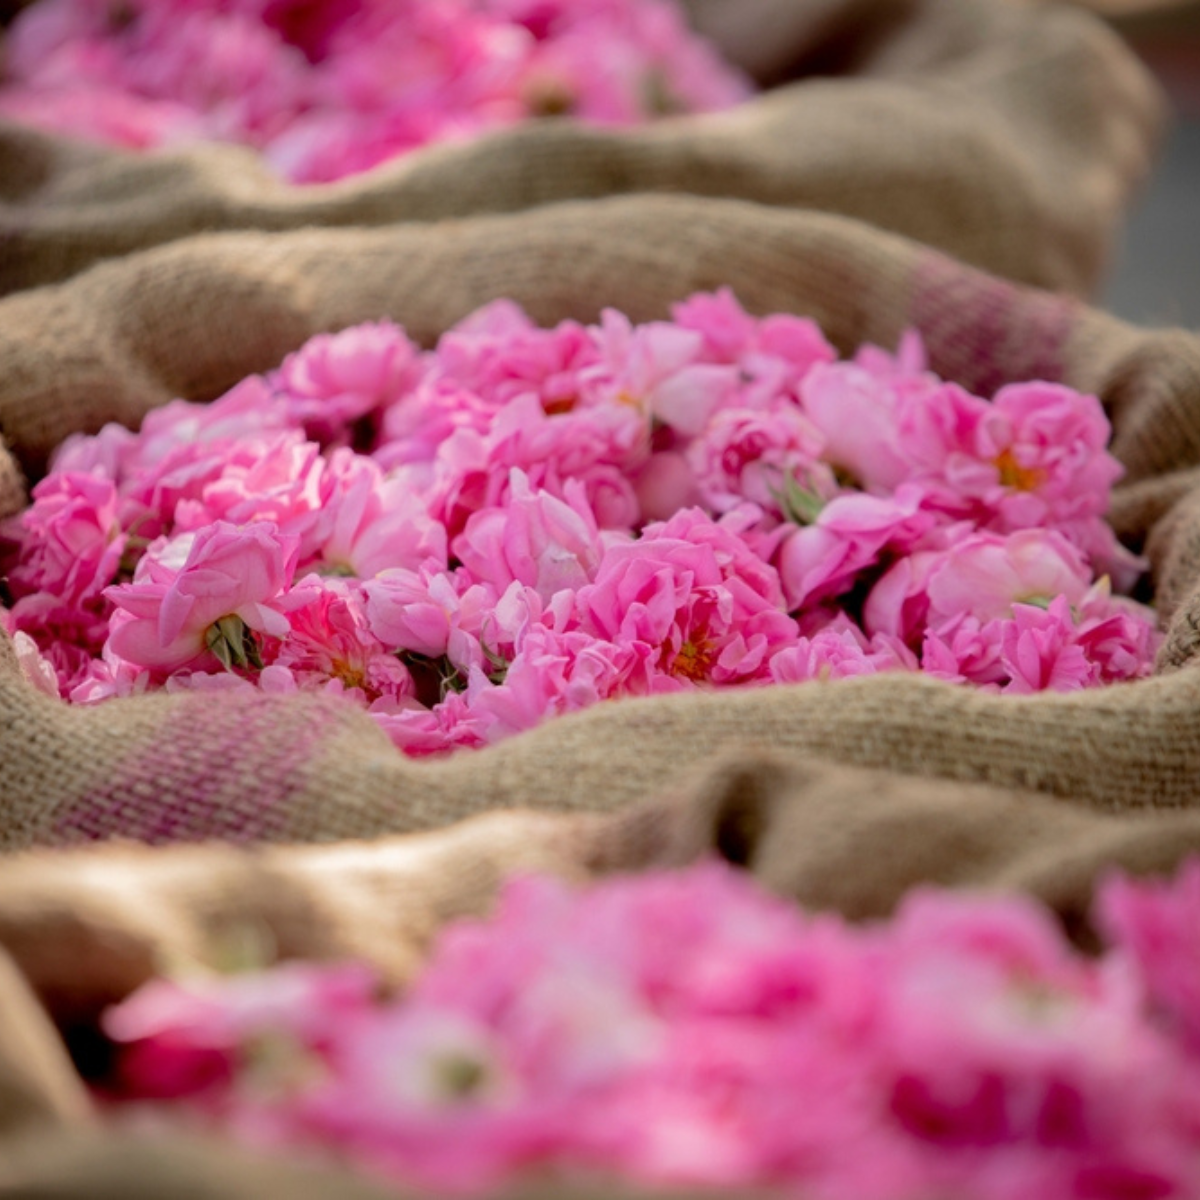 pink rose flowers in burlap bags